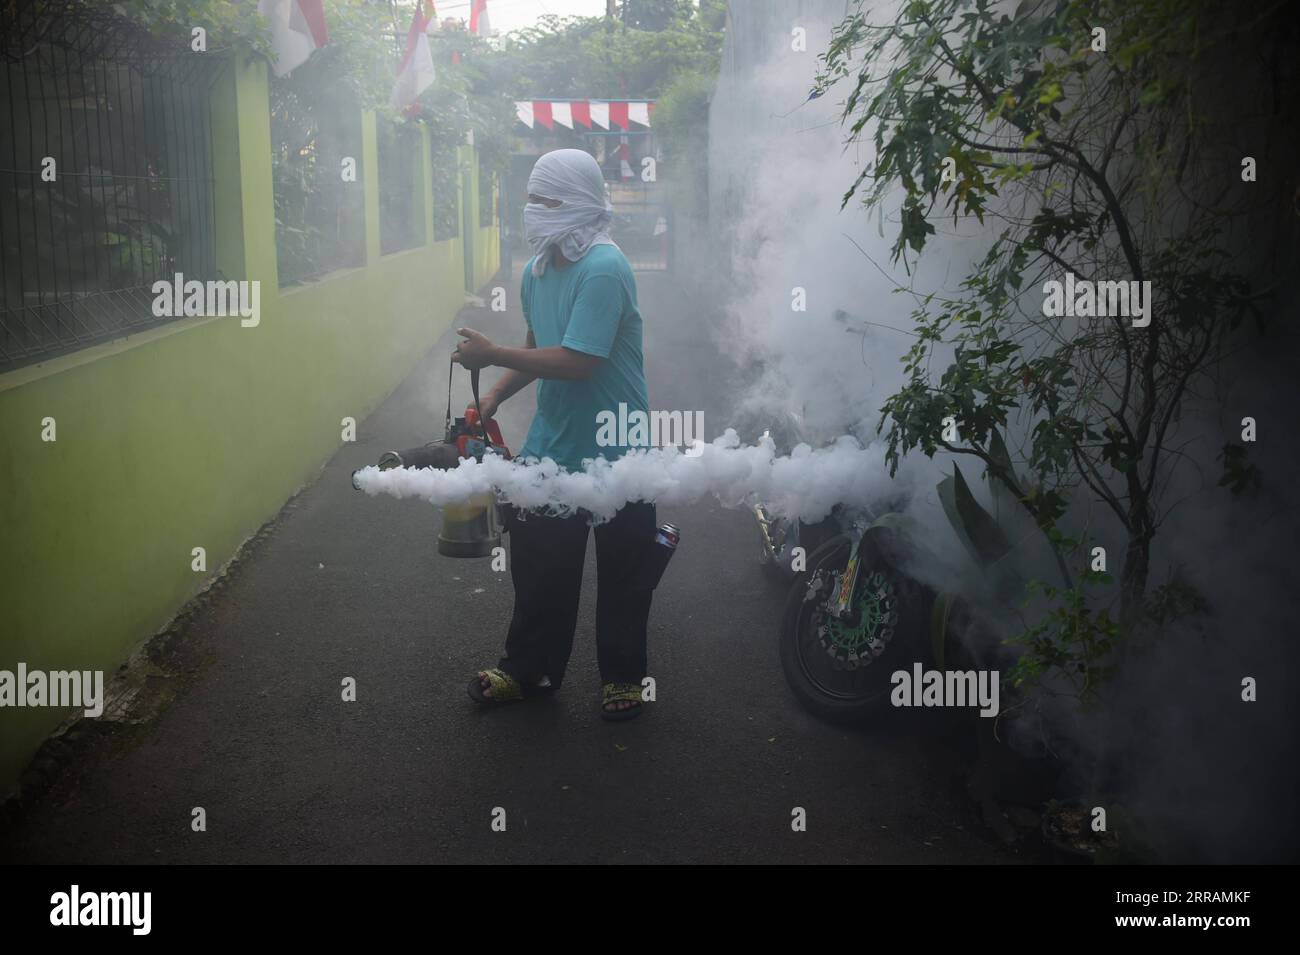 News Bilder des Tages 210808 -- GIACARTA, 8 agosto 2021 -- Un lavoratore spruzza la nebbia anti-zanzara per prevenire la dengue in un quartiere a Giacarta, Indonesia, 8 agosto 2021. INDONESIA-GIACARTA-PREVENZIONE DELLA DENGUE Zulkarnain PUBLICATIONxNOTxINxCHN Foto Stock